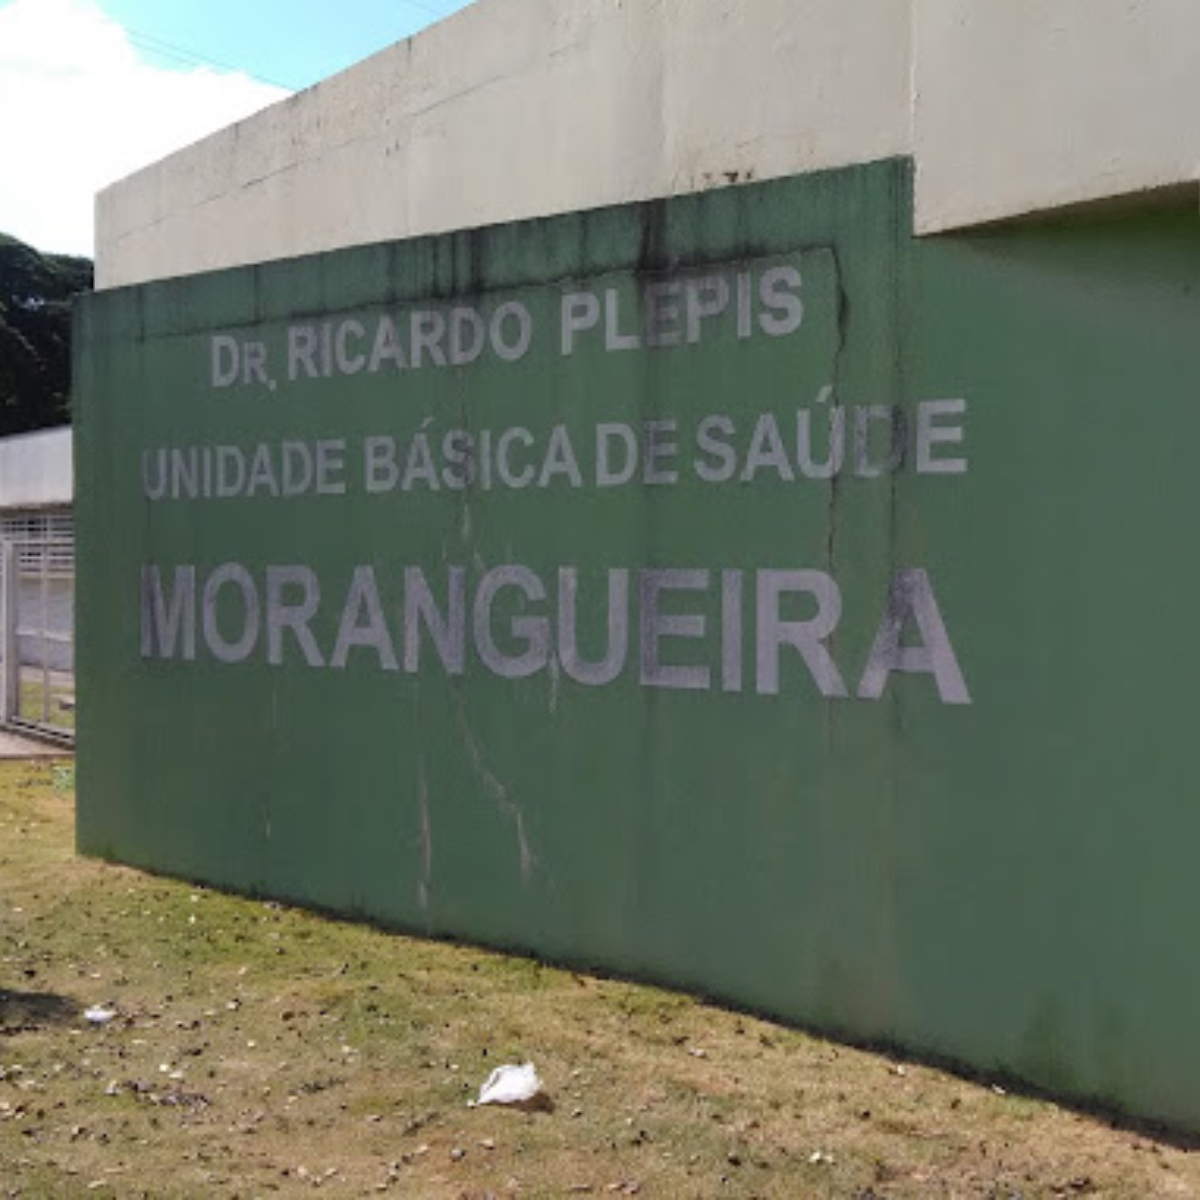  UBS Morangueira em Maringá 